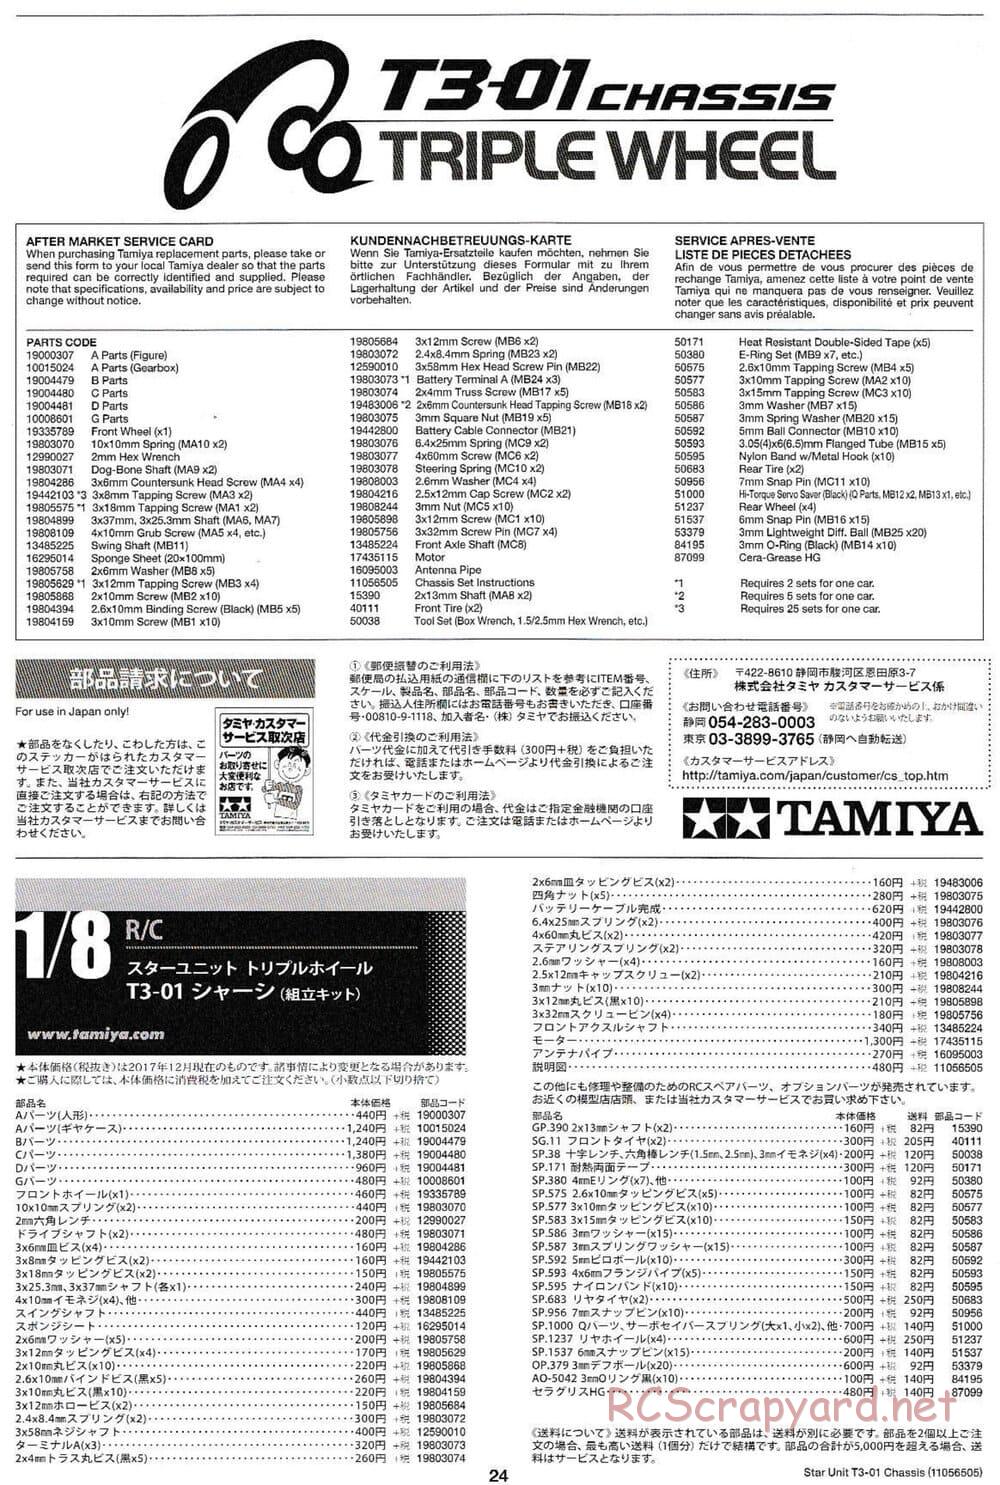 Tamiya - T3-01 Chassis - Manual - Page 24